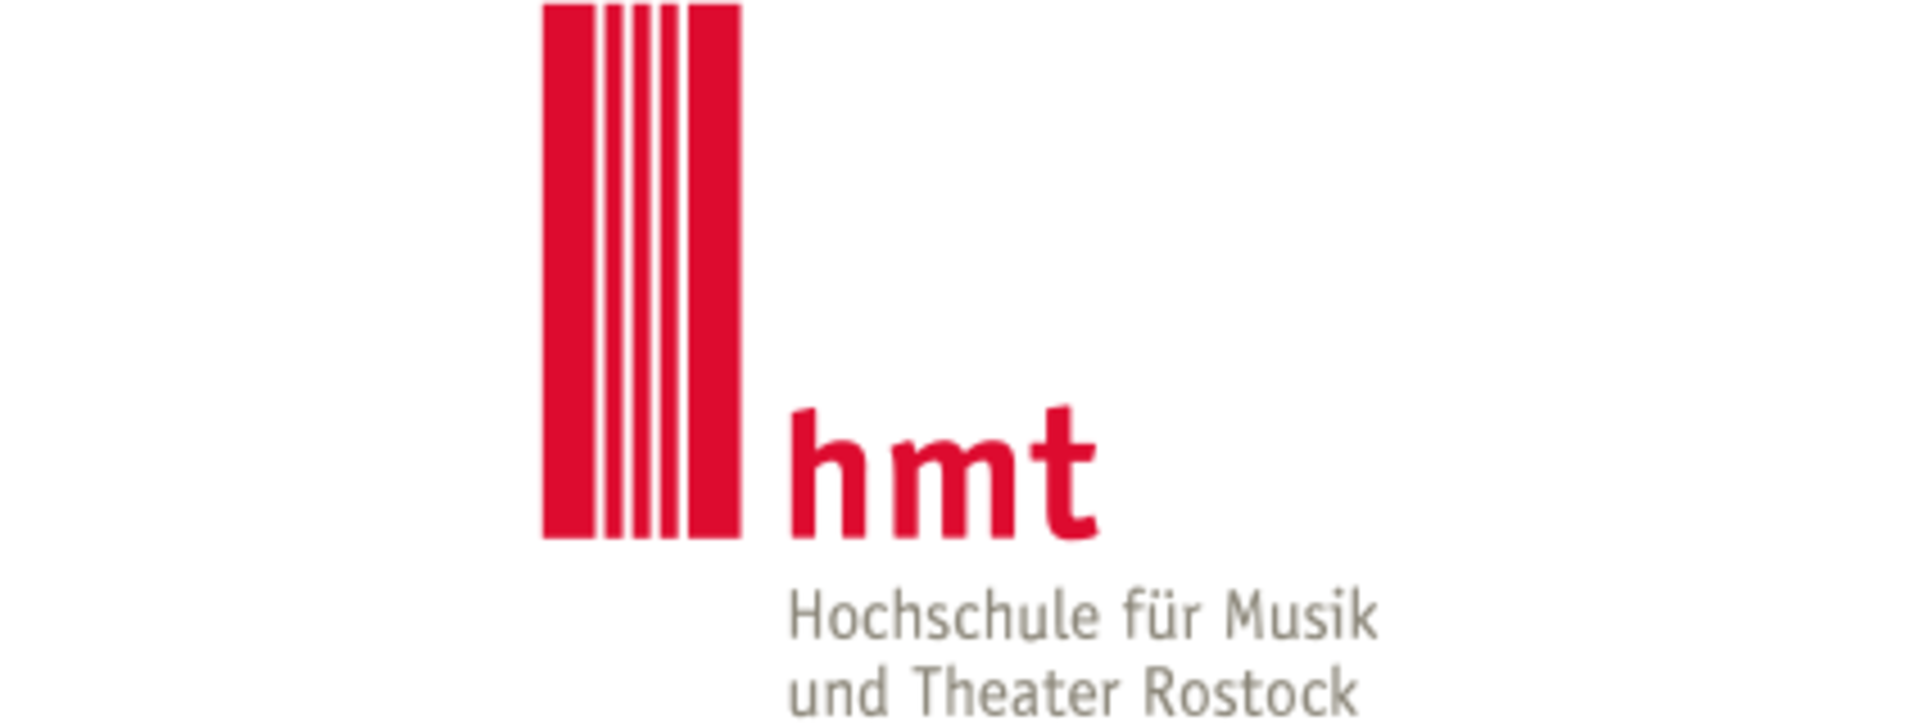 Hochschulberatung - Hochschule für Musik und Theater Rostock